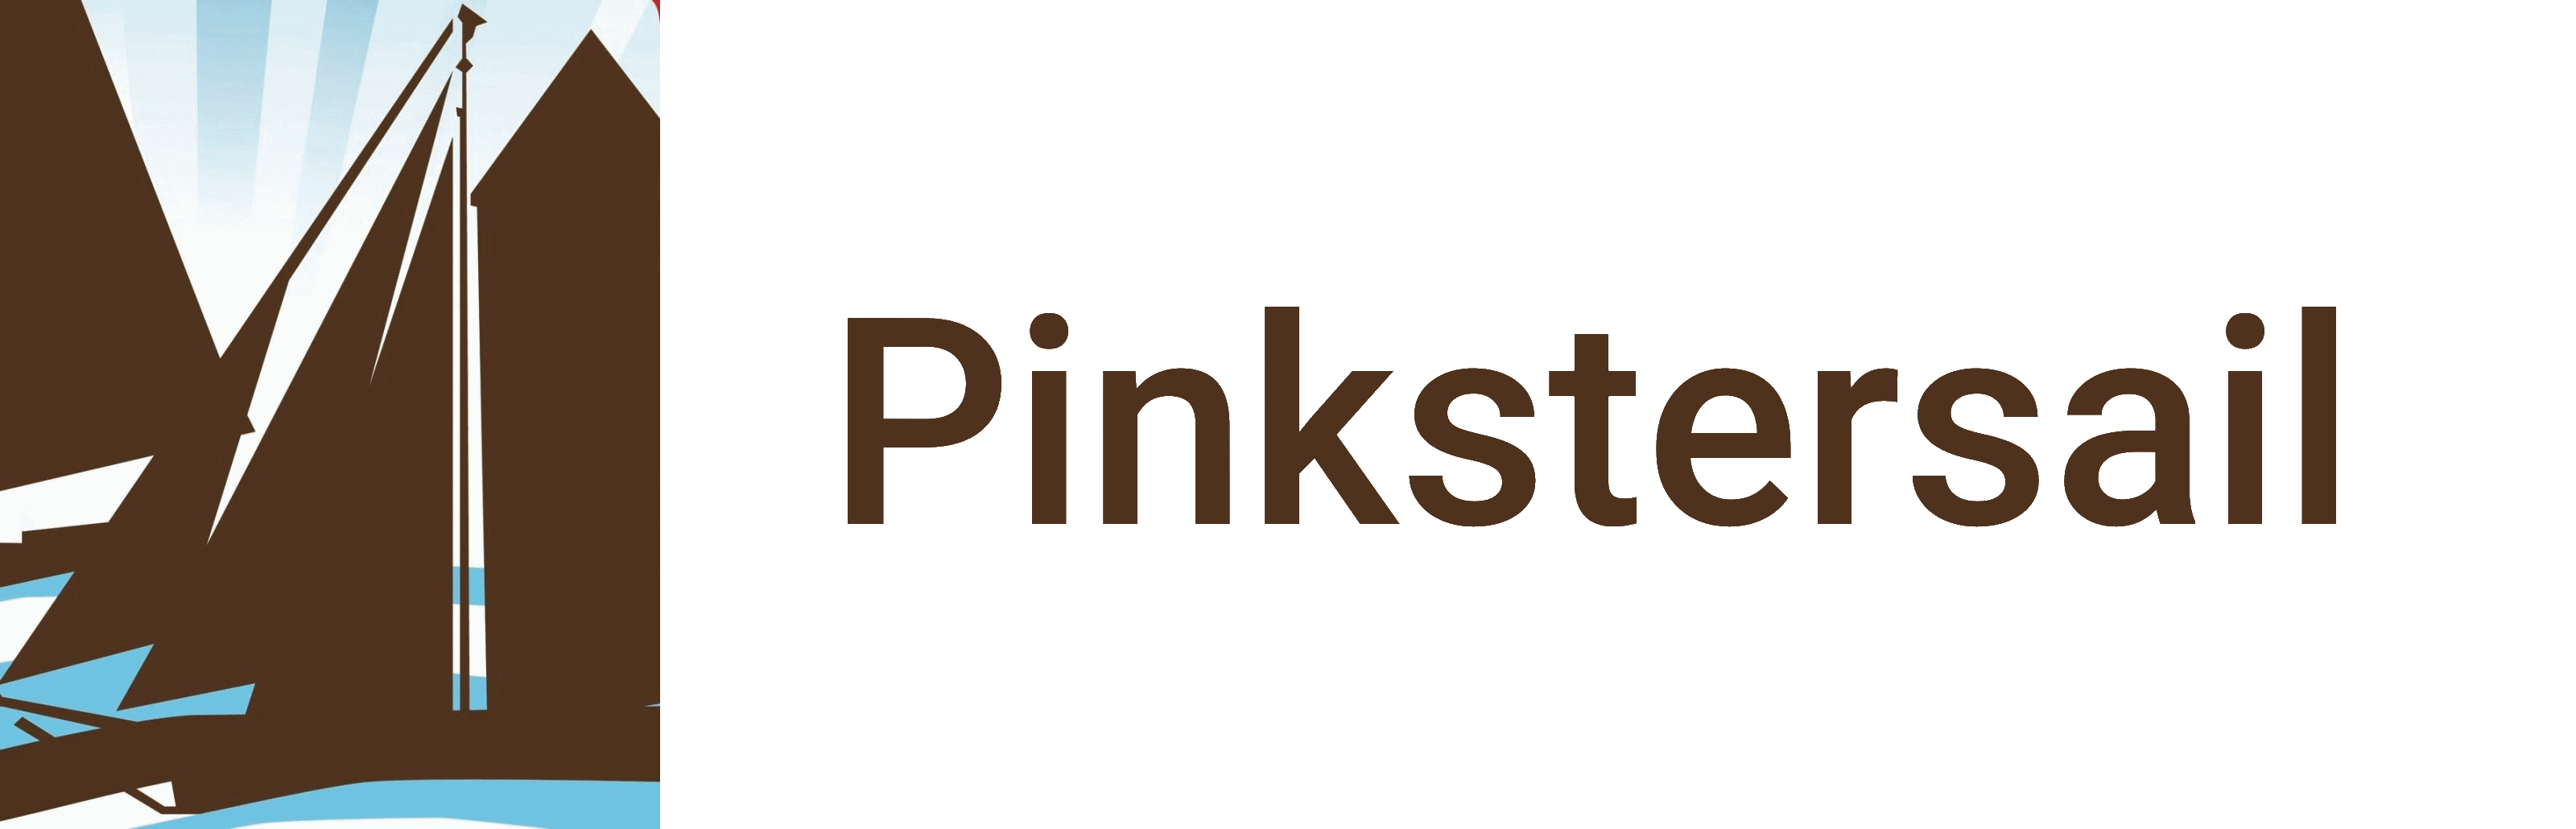 PinksterSail